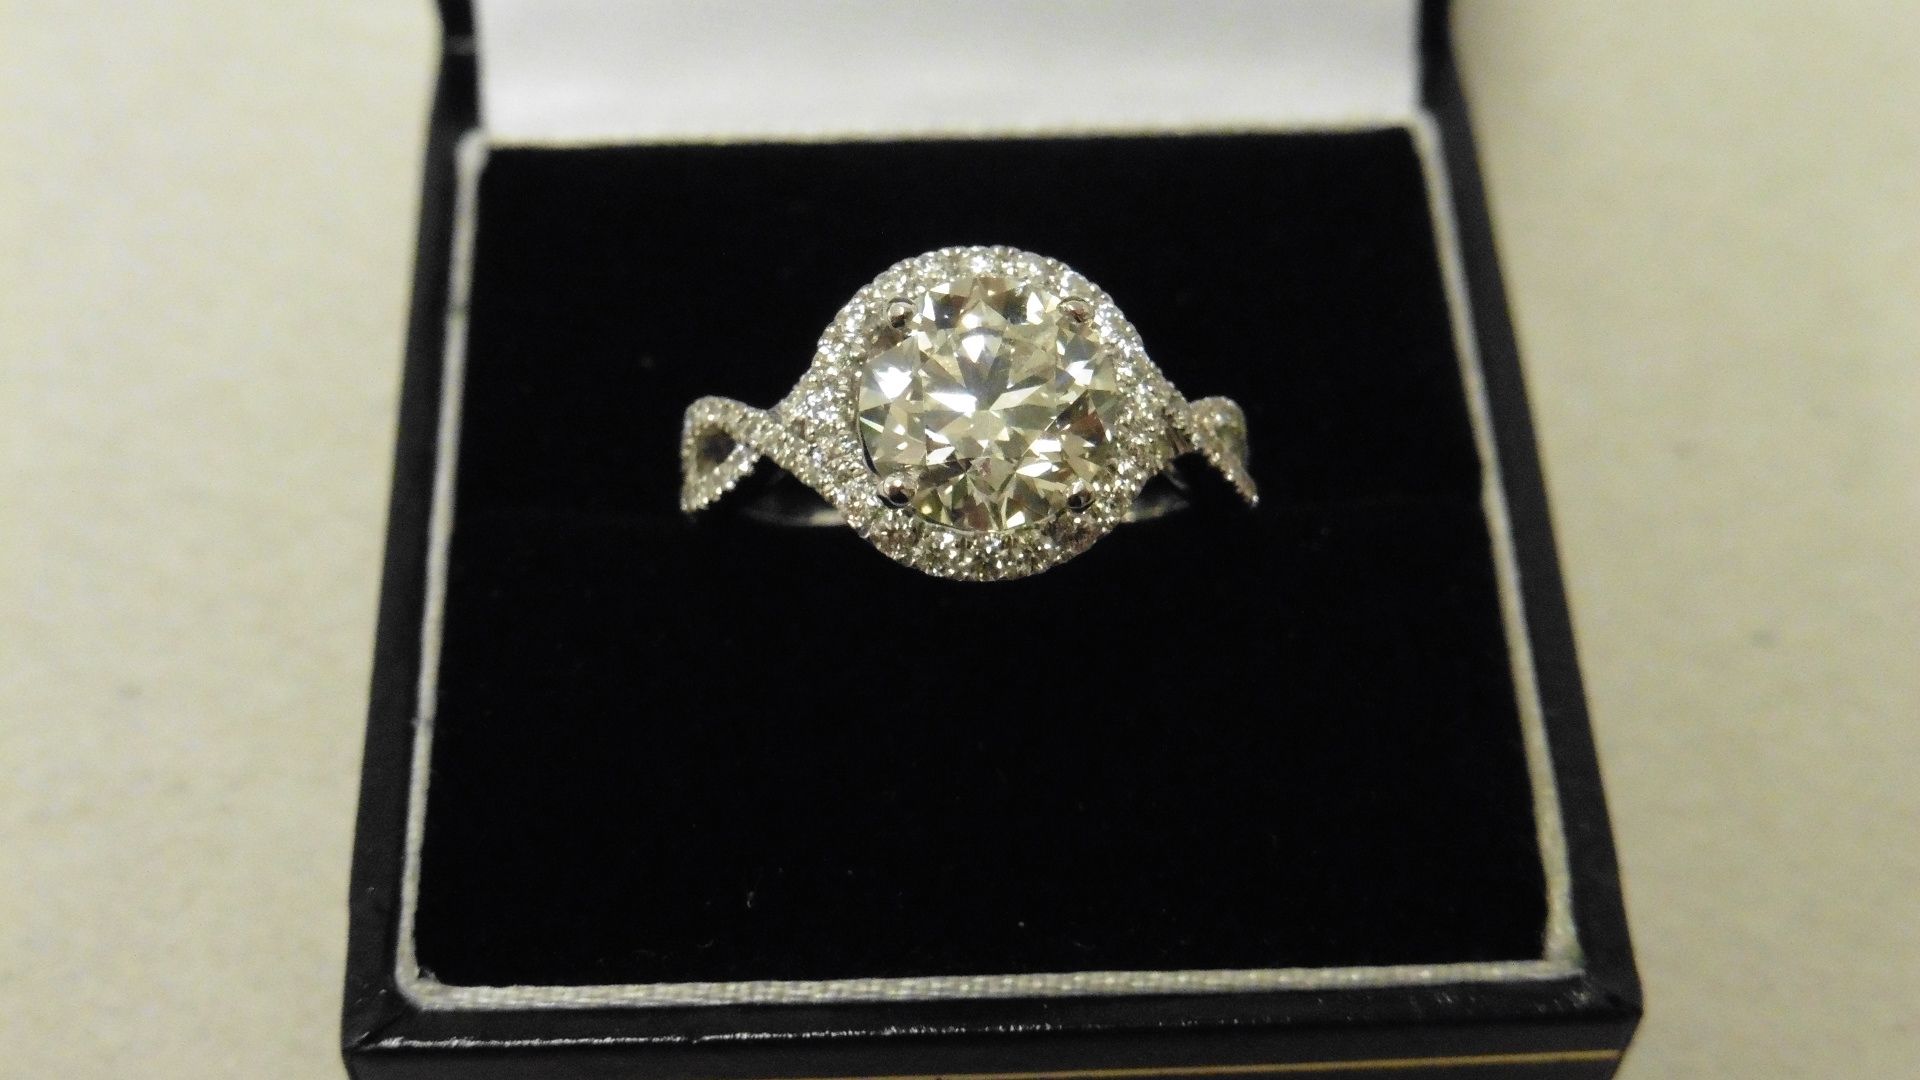 0.70ct diamond set pendant. Brilliant cut diamond I-J colour, si2-I1 clarity. Halo setting with - Image 4 of 4